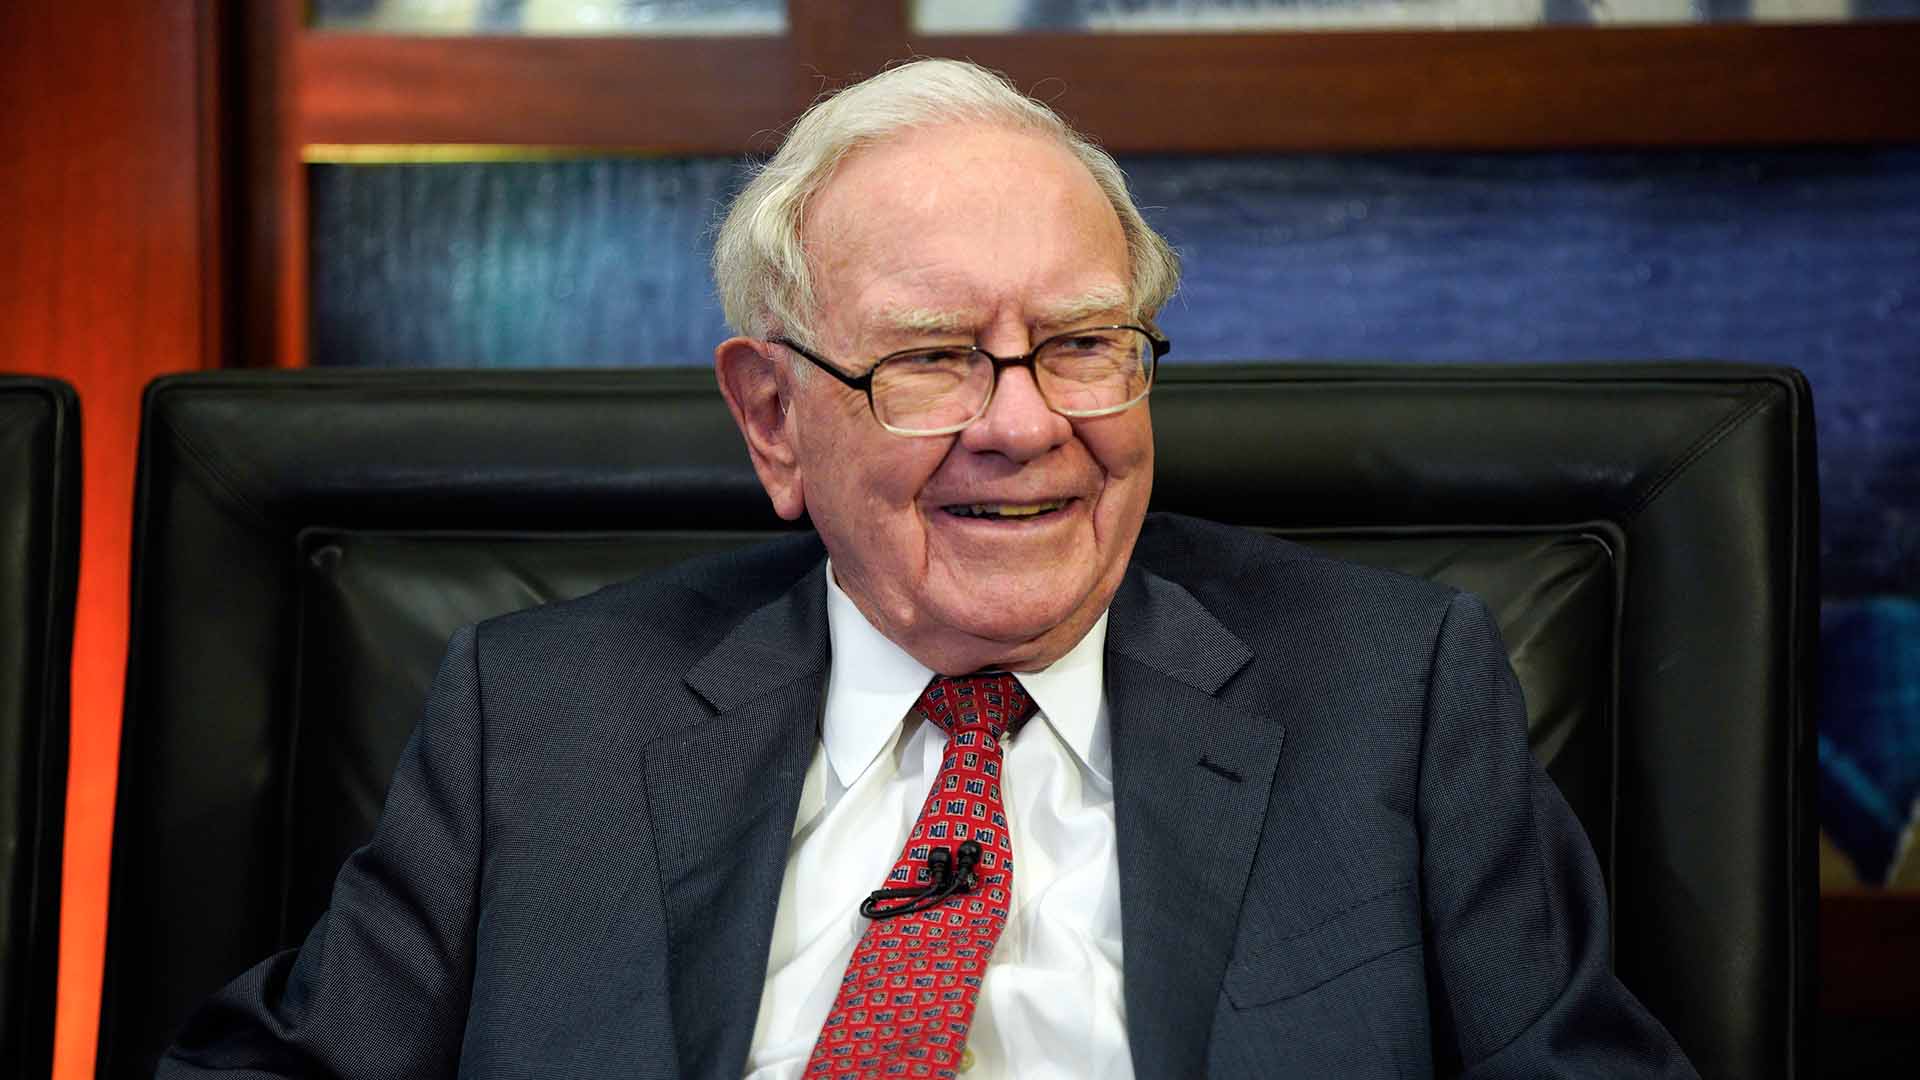 Nace una cuenta falsa del magnate Warren Buffett y se hace viral por sus valiosos consejos para la vida